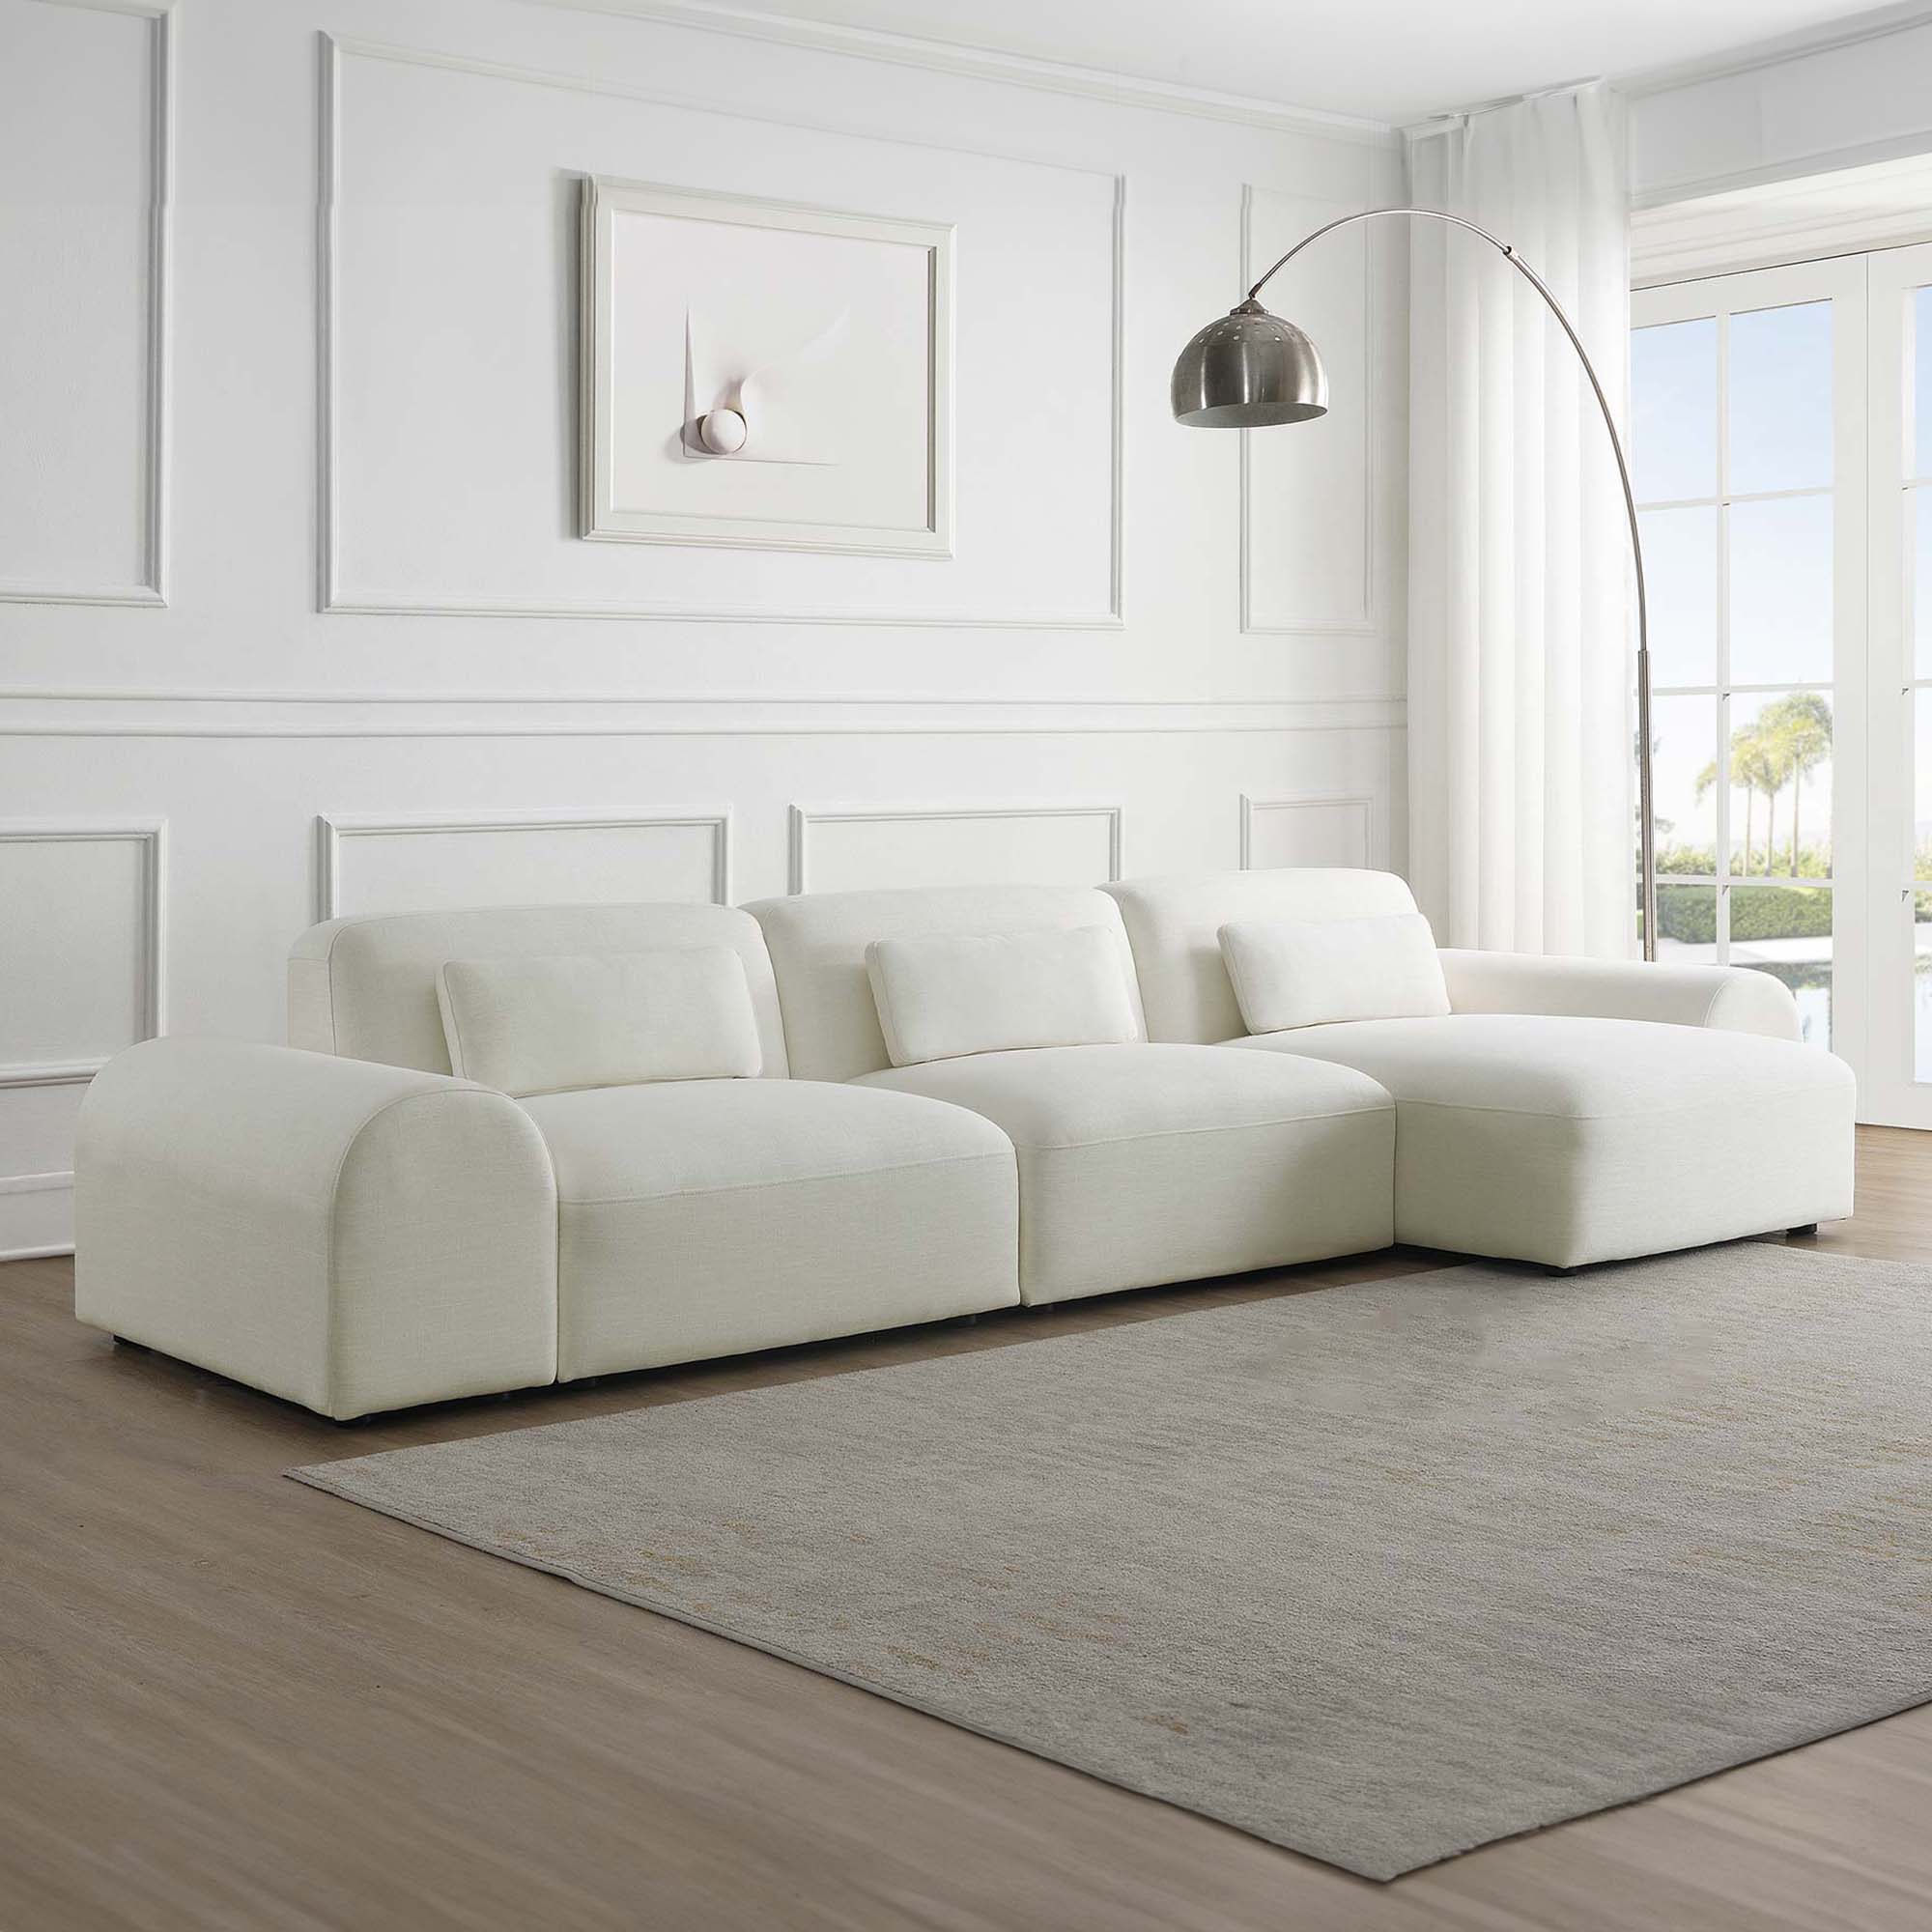 Canapé contemporain d'angle réversible en tissu blanc écru